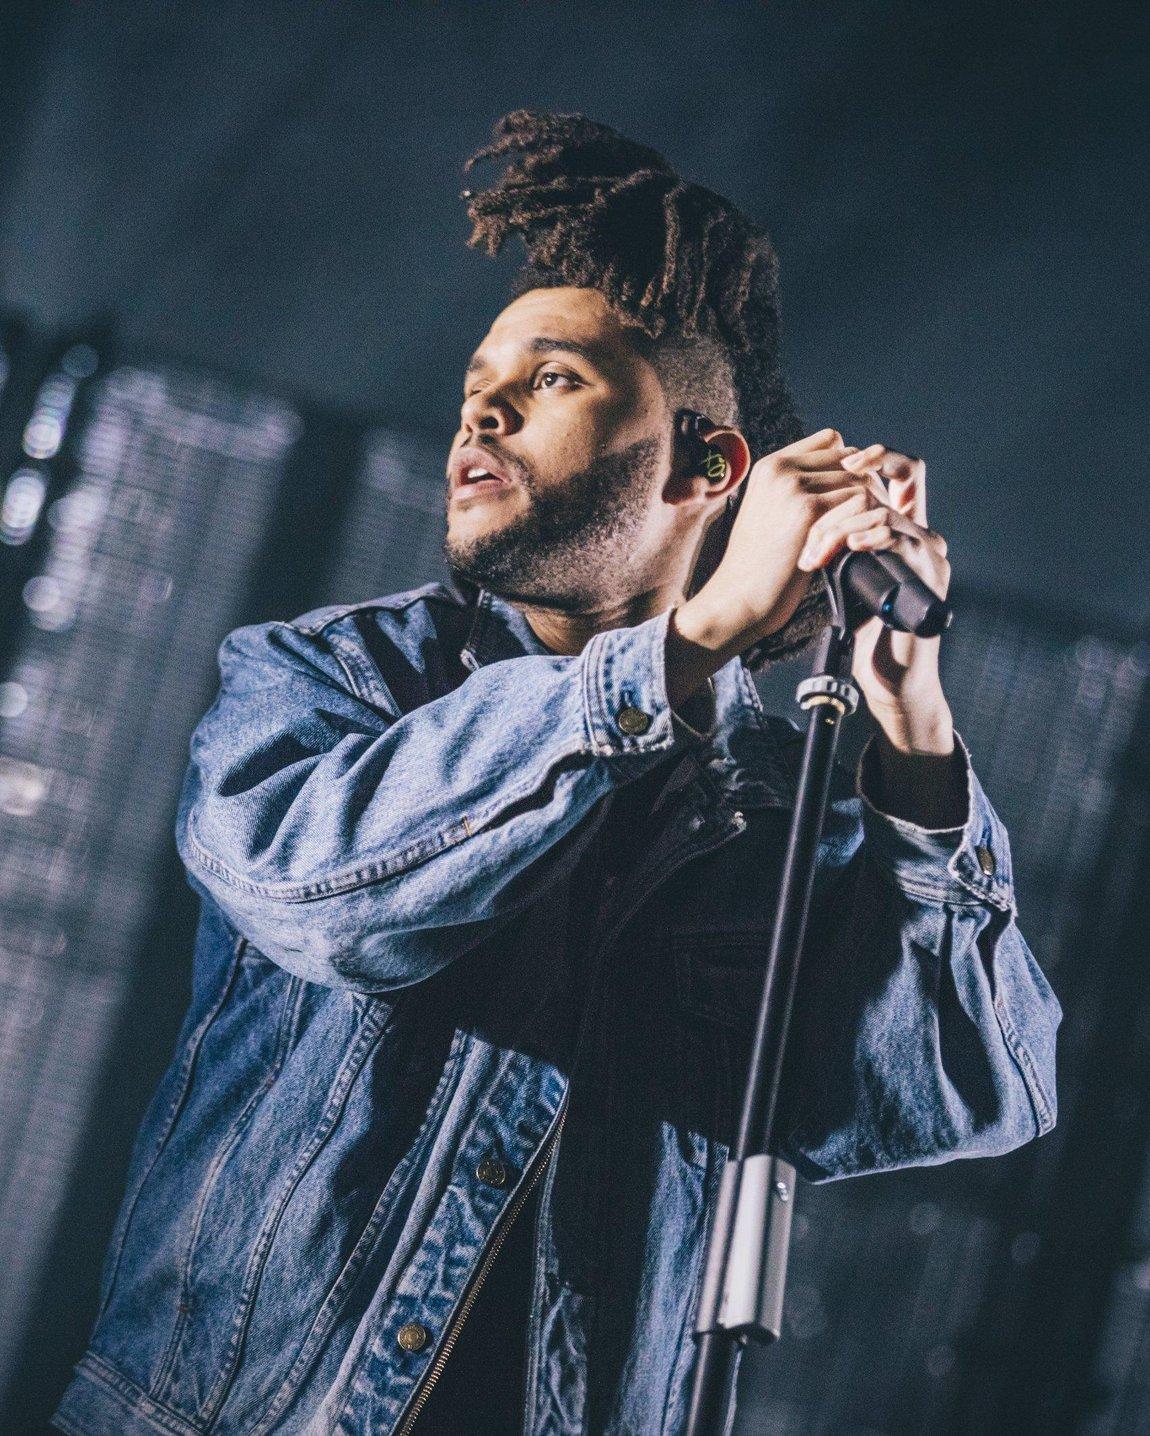 Песни викенд слушать. Rhee weeeeknd. The Weeknd. Уикенд певец 2022. The Weeknd 2020 Live.